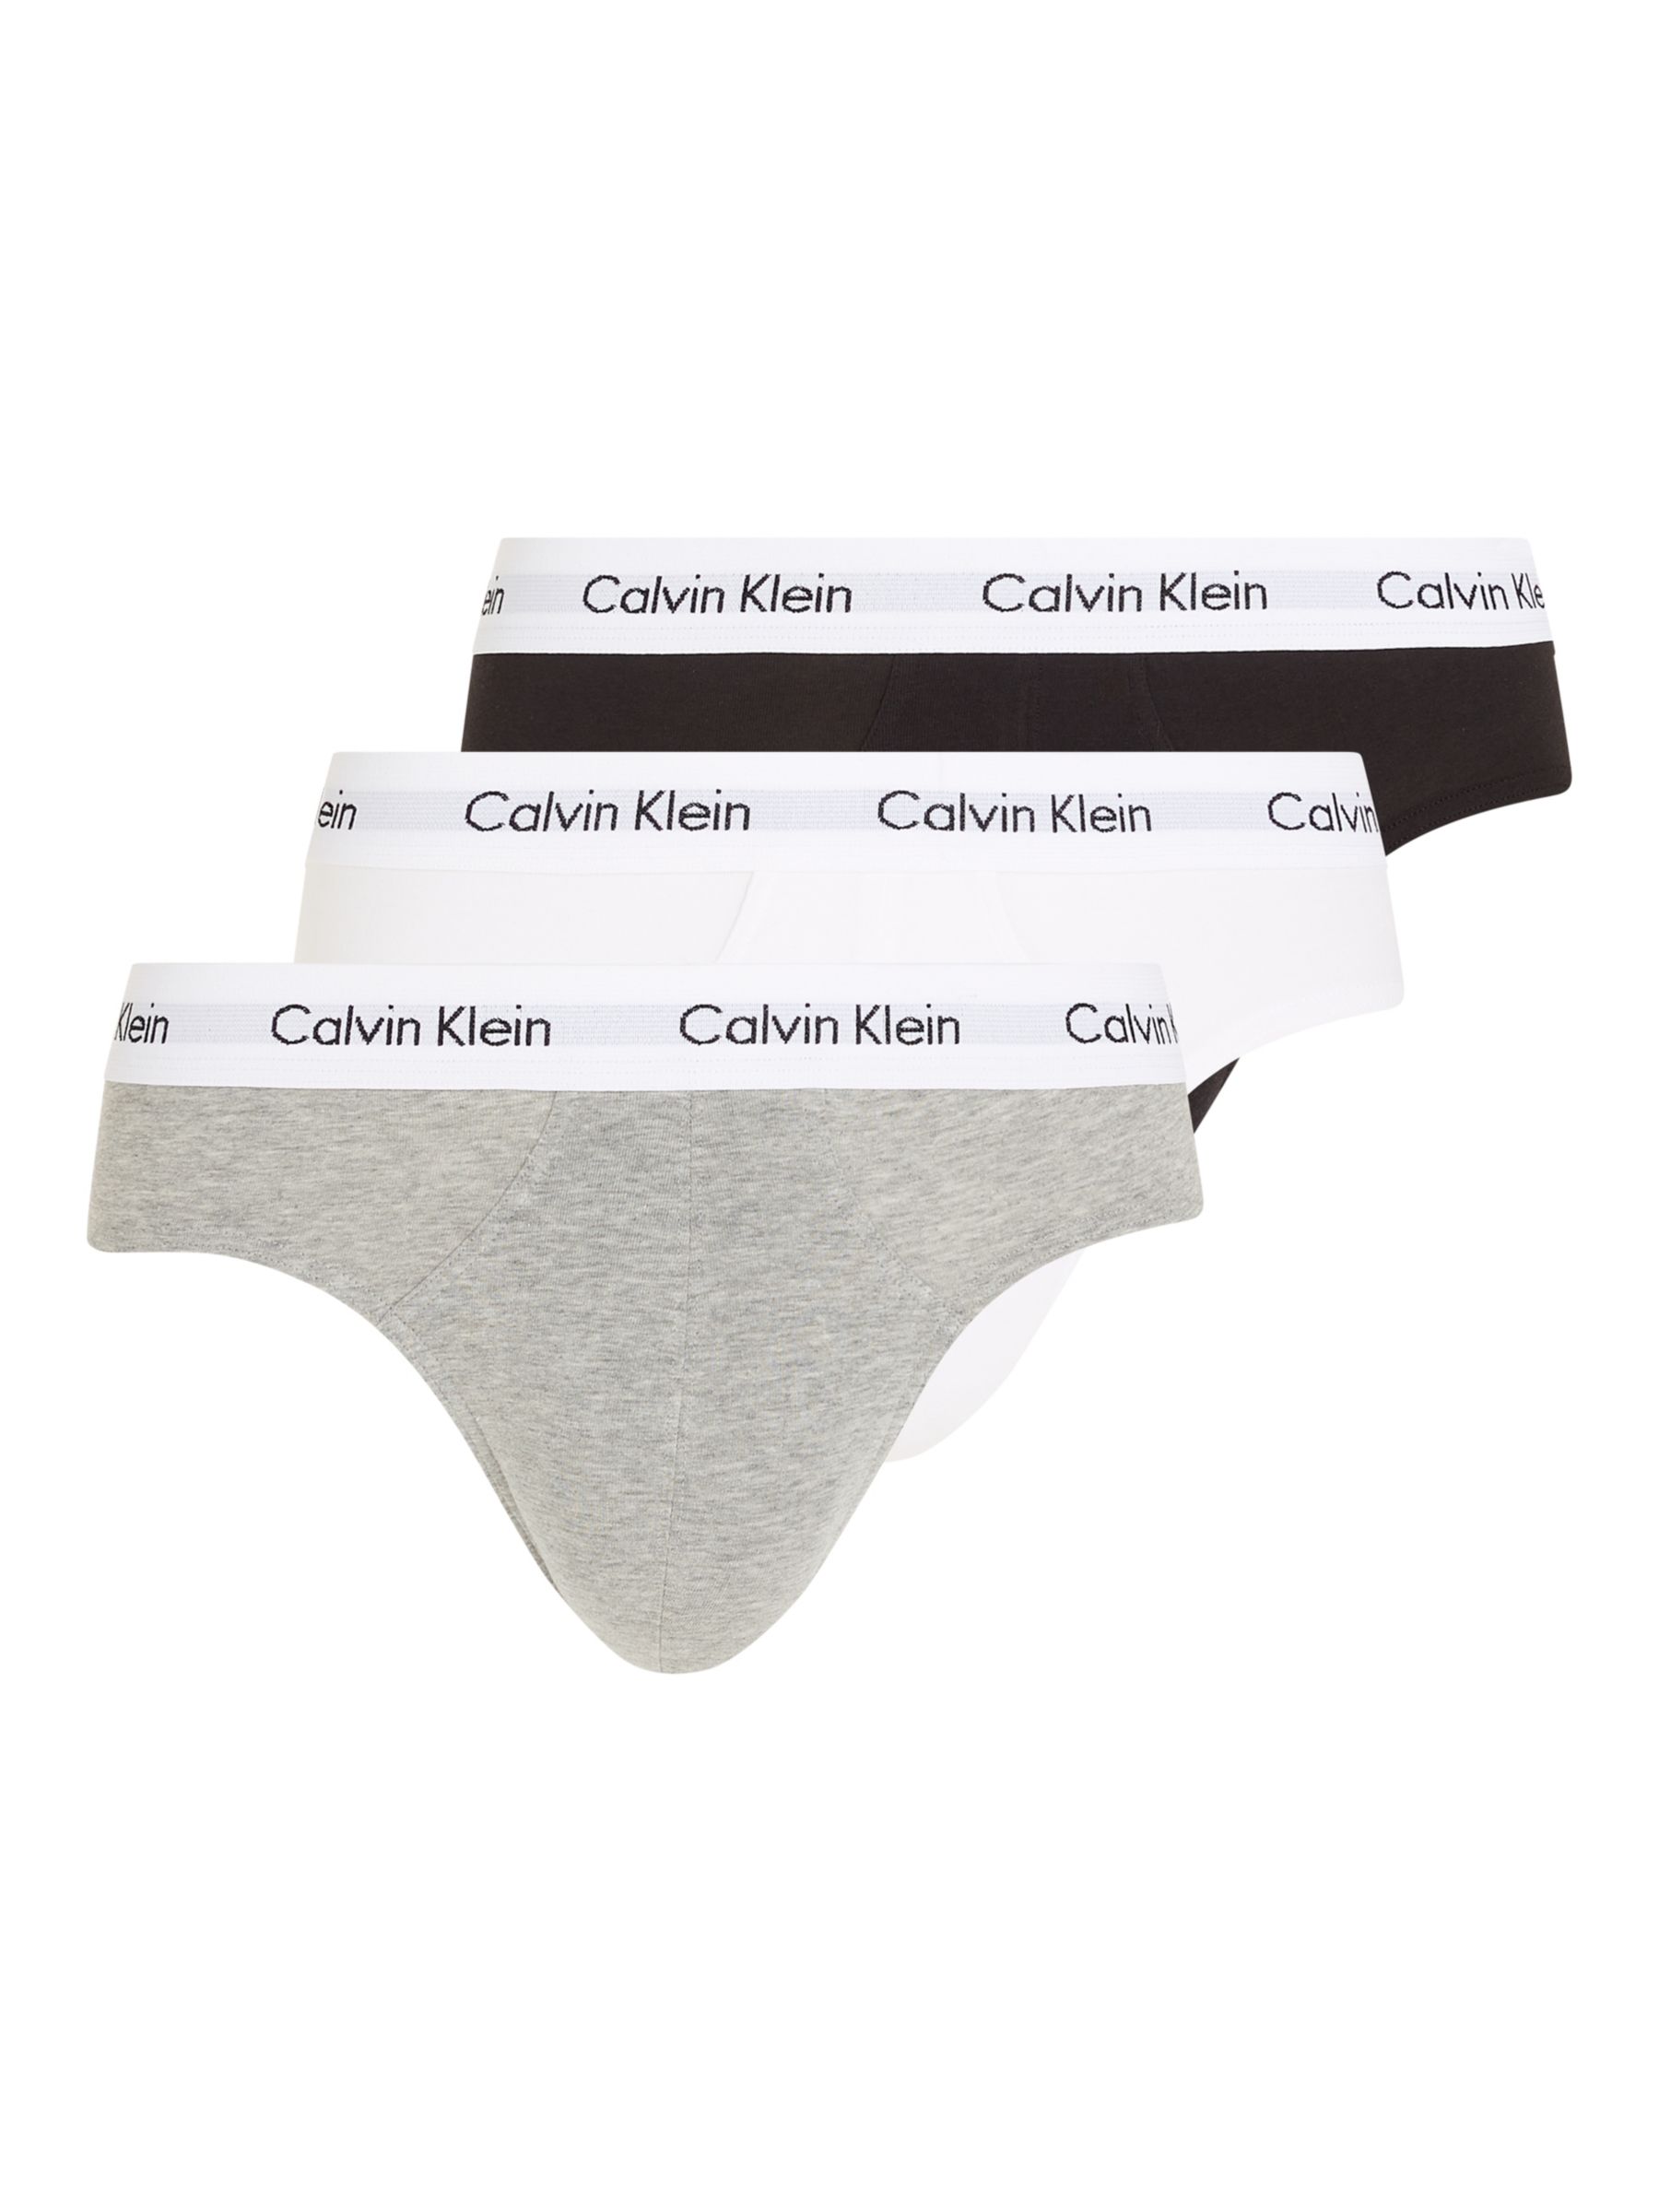 Calvin Klein Underwear Cotton Briefs, Pack of 3, Black/White/Grey